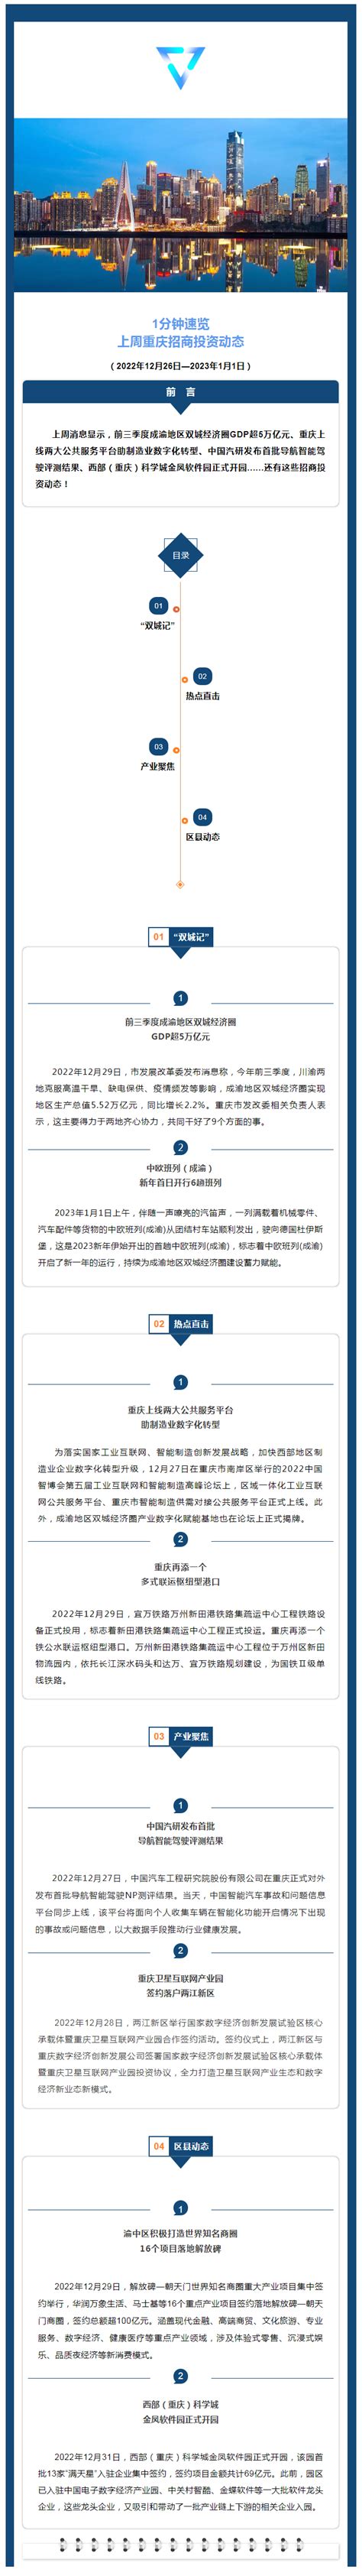 一分钟速览丨上周重庆招商投资动态（4.12-4.18）-重庆市招商投资促进局